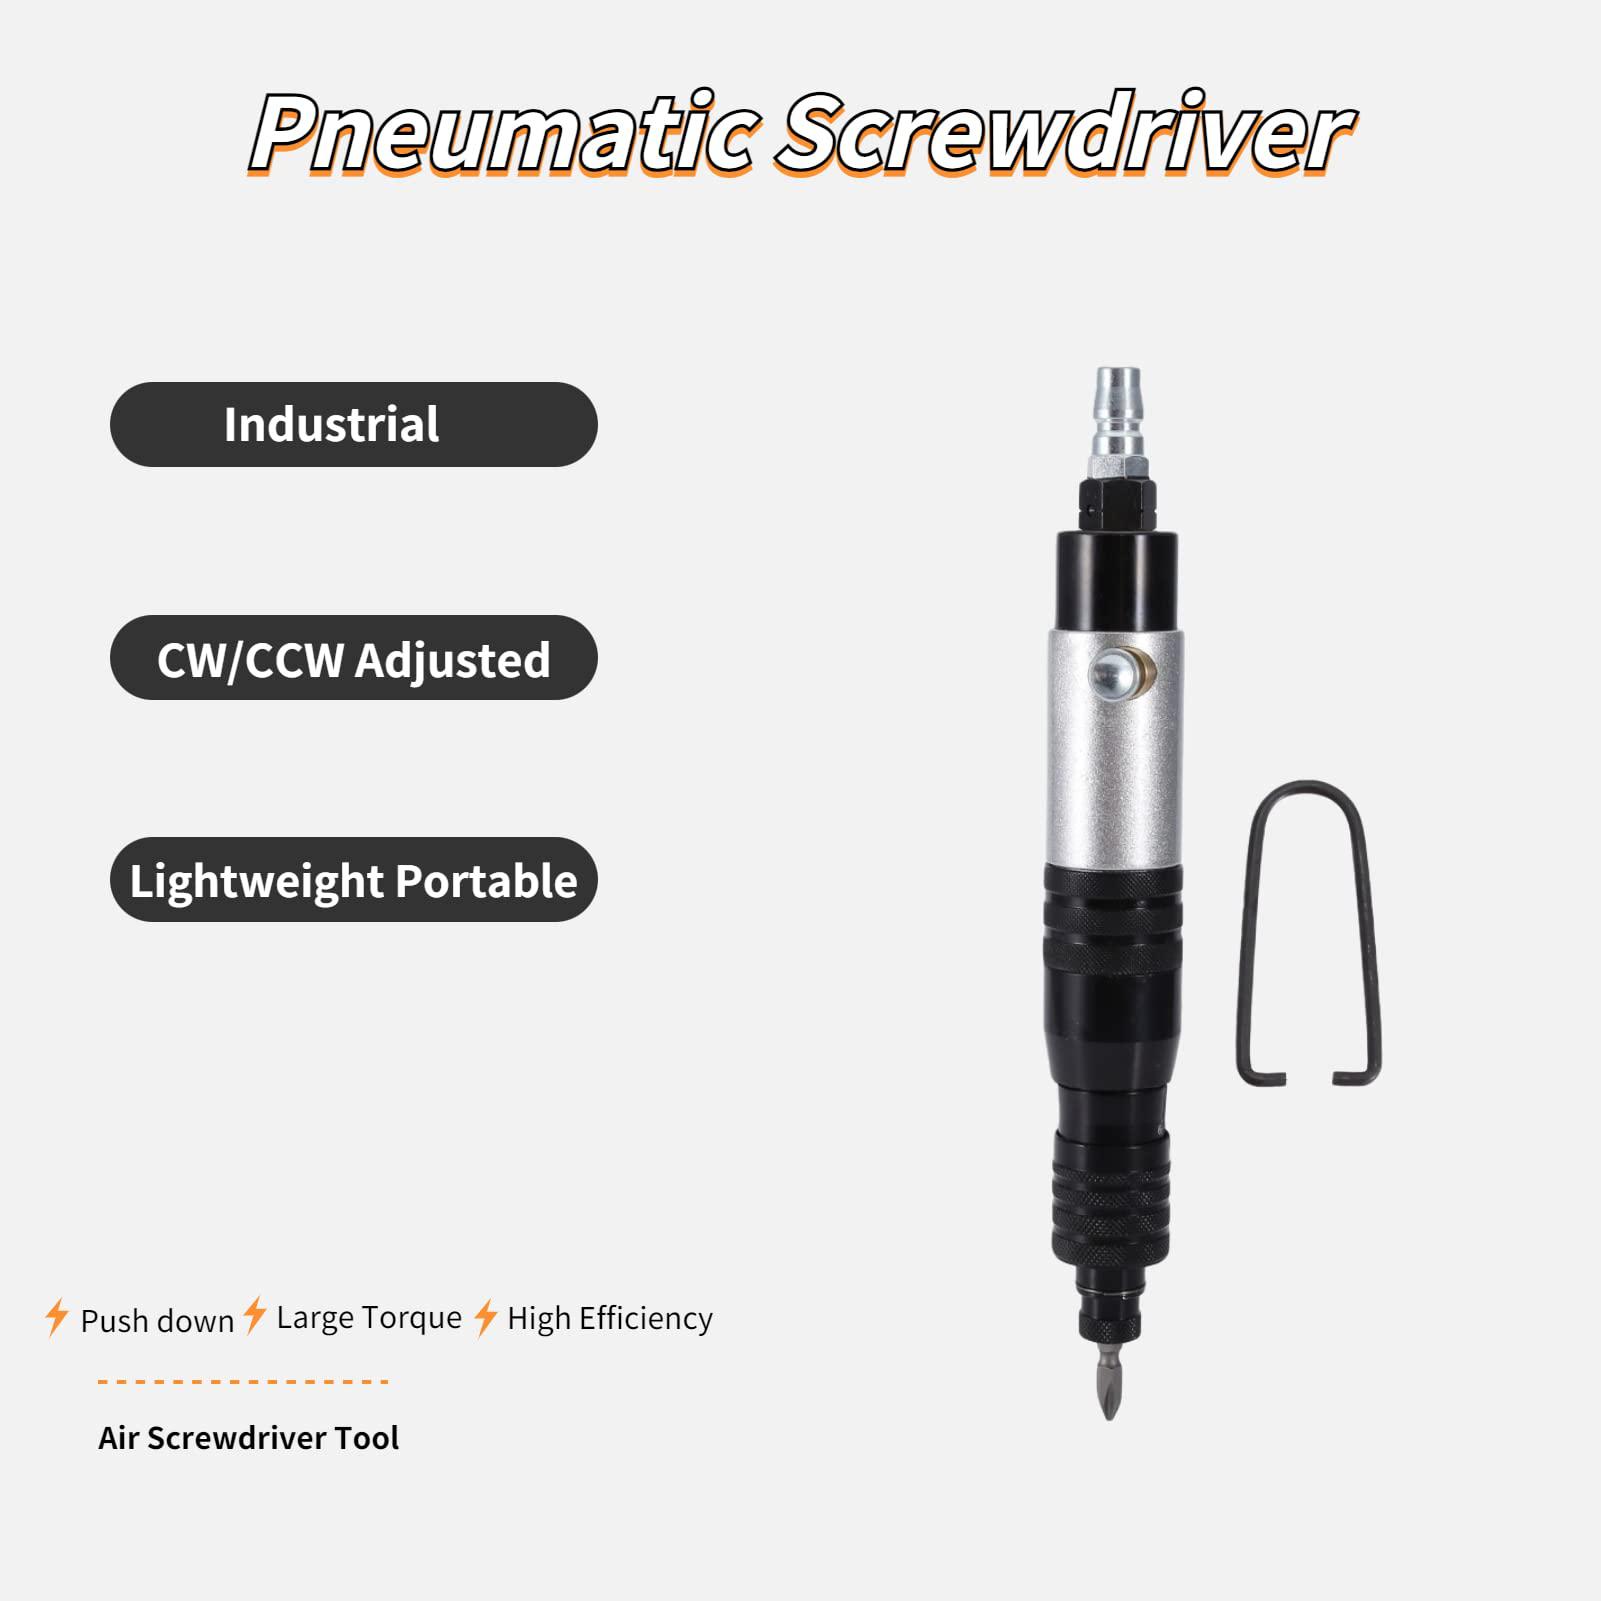 Liccx industrial pneumatic screwdriver,professional handhold pneumatic screwdriver,lightweight portable pneumatic screwdriver,1200r